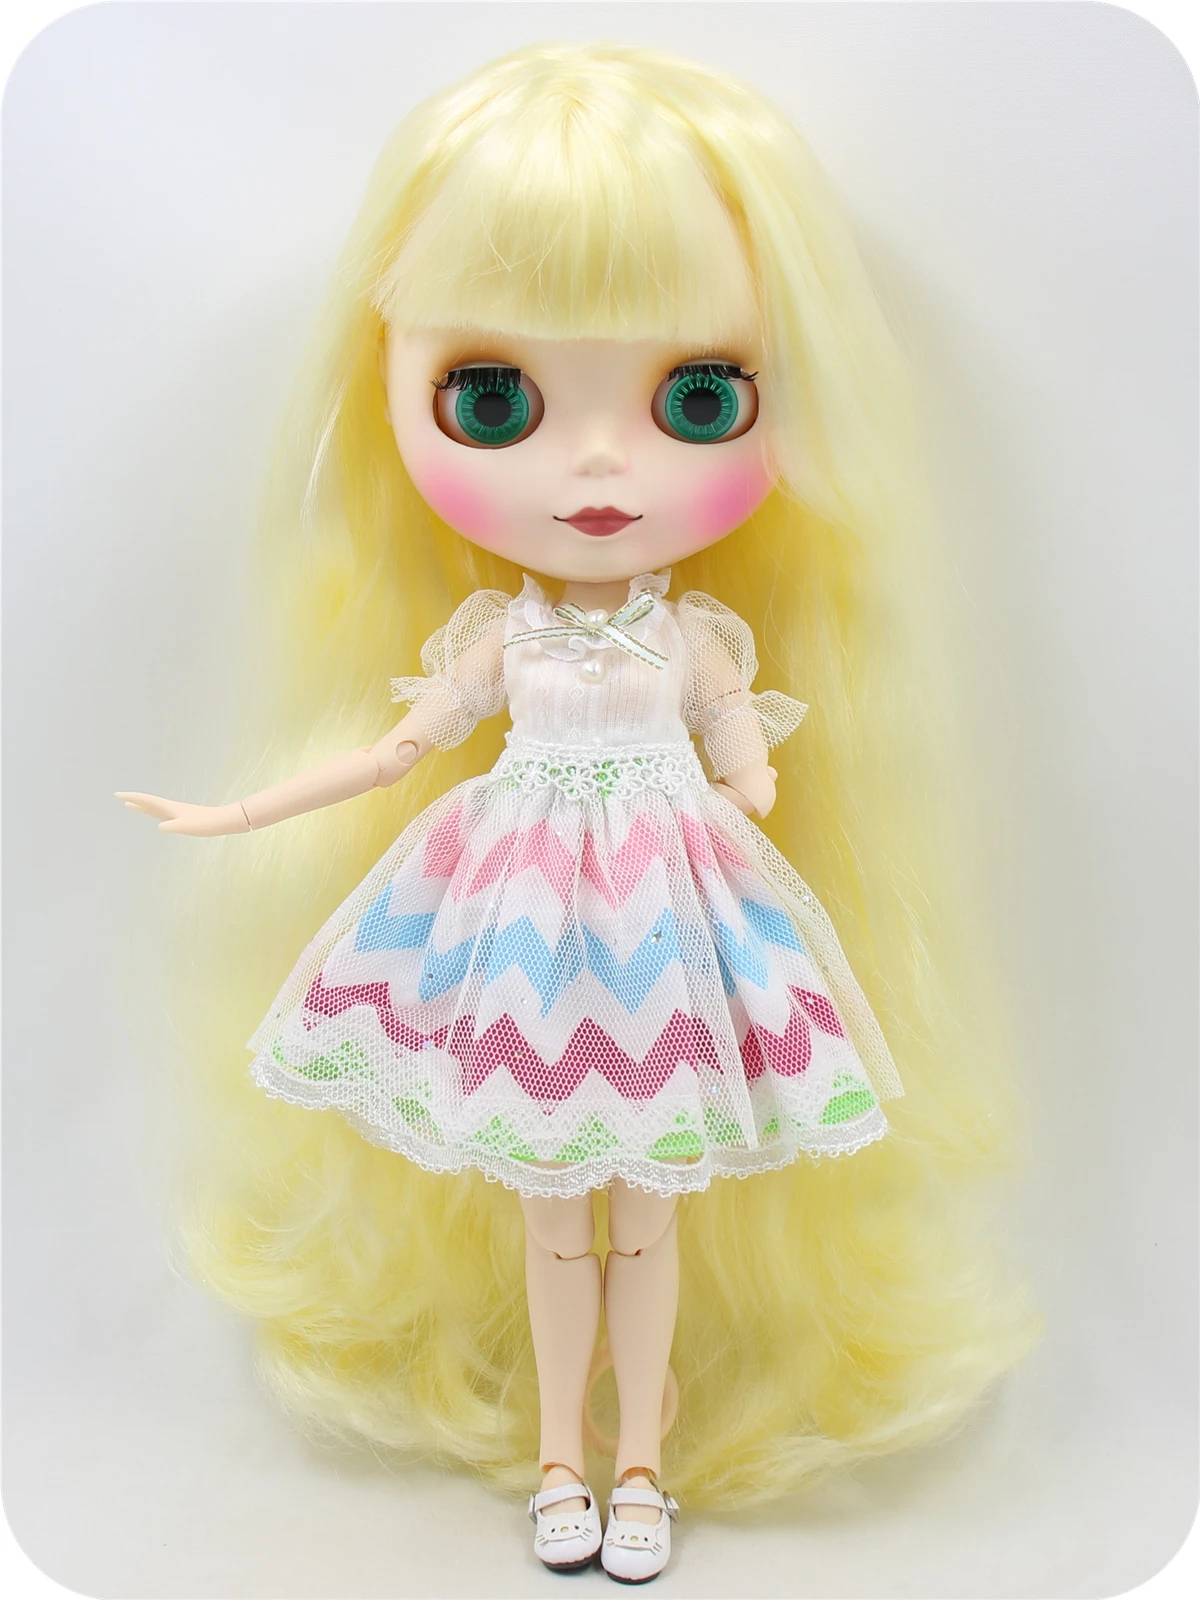 Leona – Premium Custom Blythe Doll with Cute Face 3